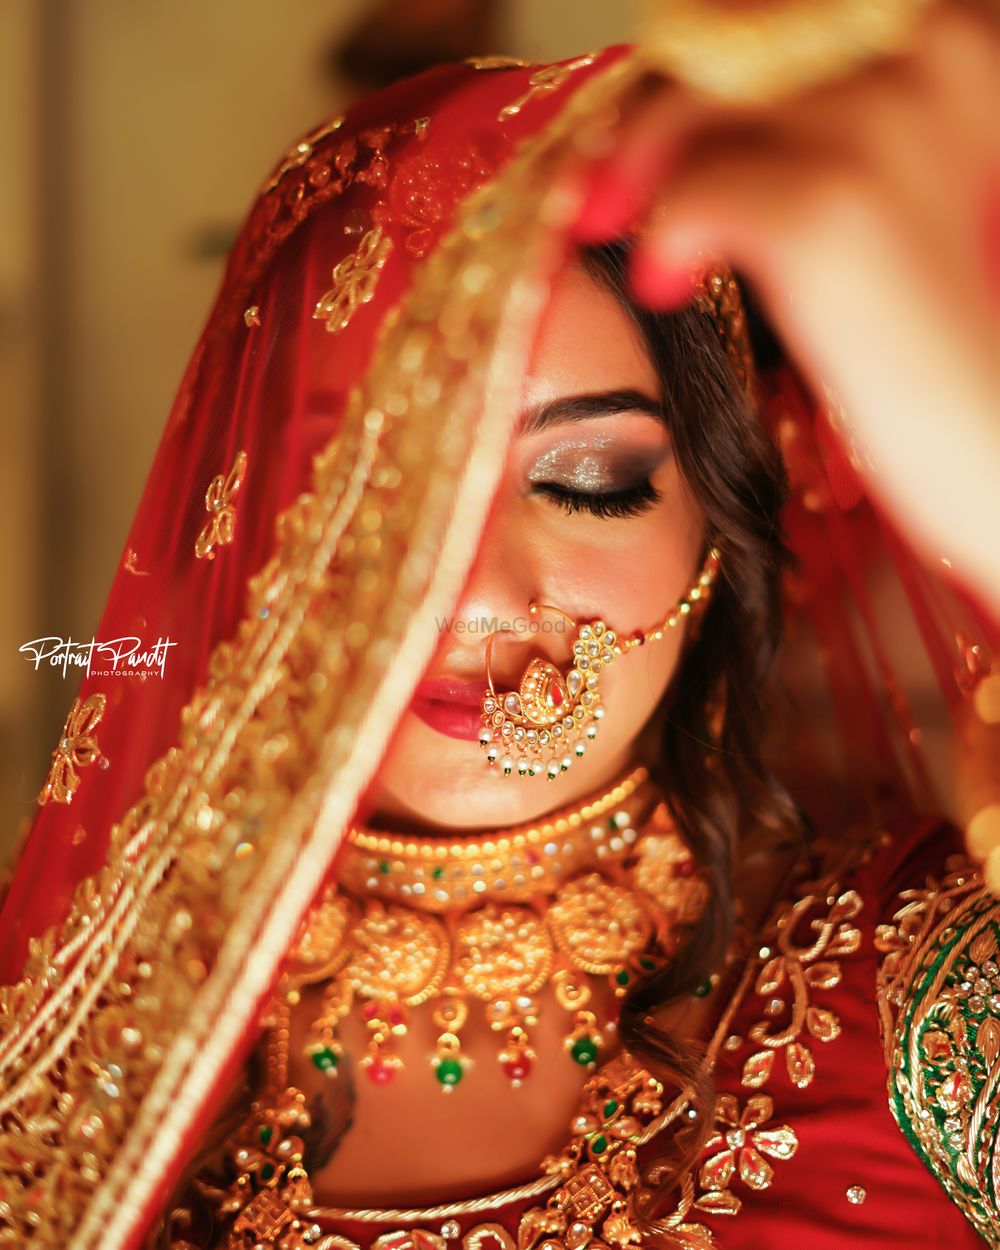 Photo From Brides Of Portrait Pandit - By Portrait Pandit Photography